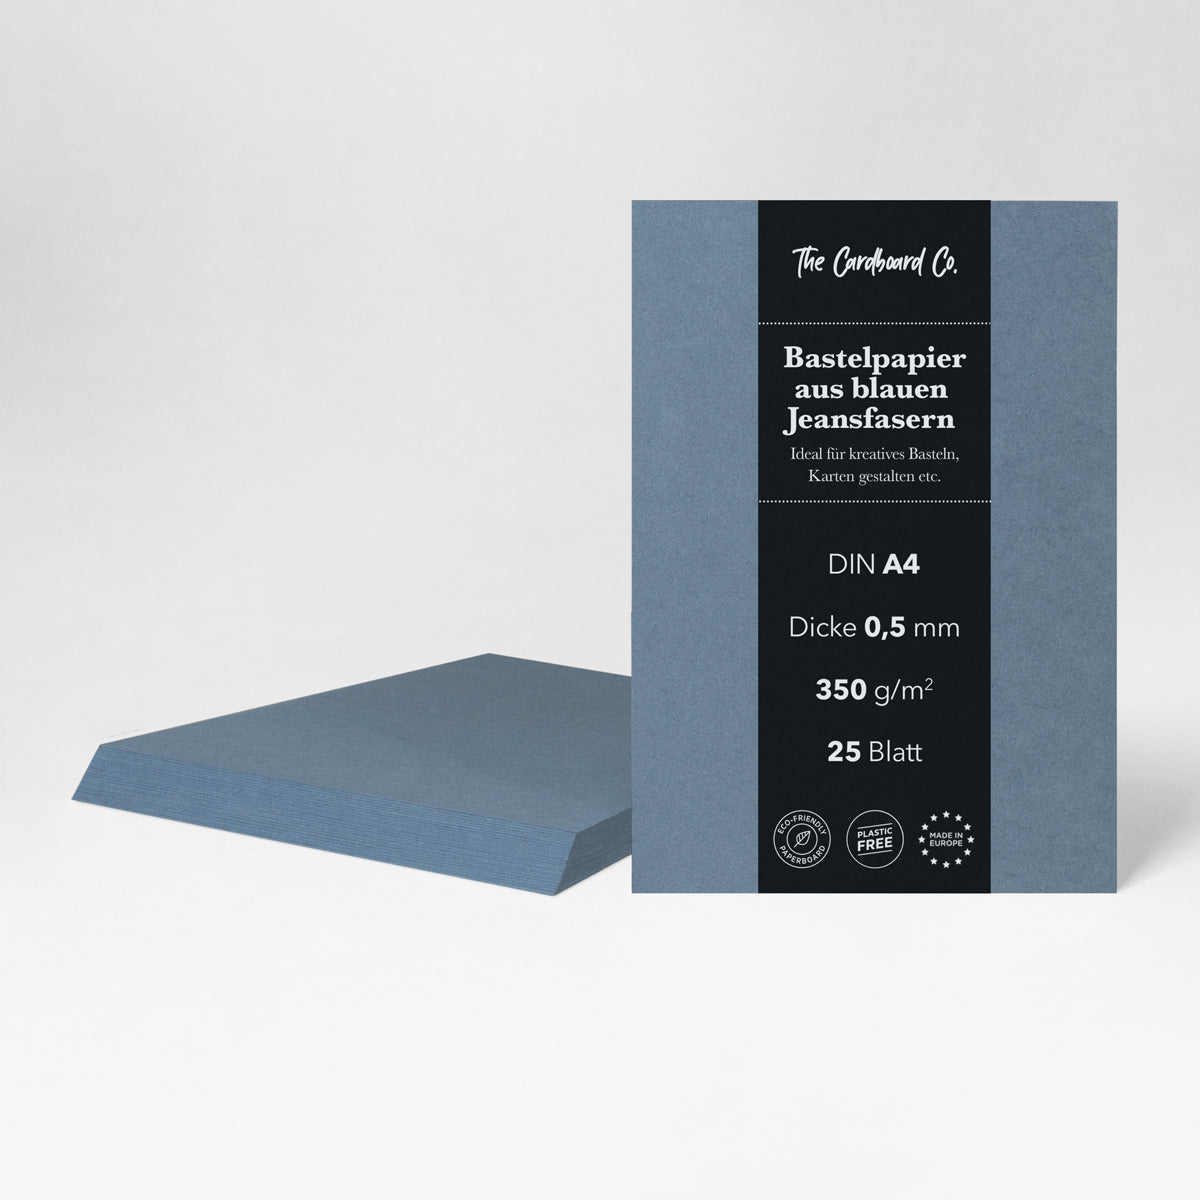 Bastelpapier / Bastelkarton aus blauen Jeansfasern